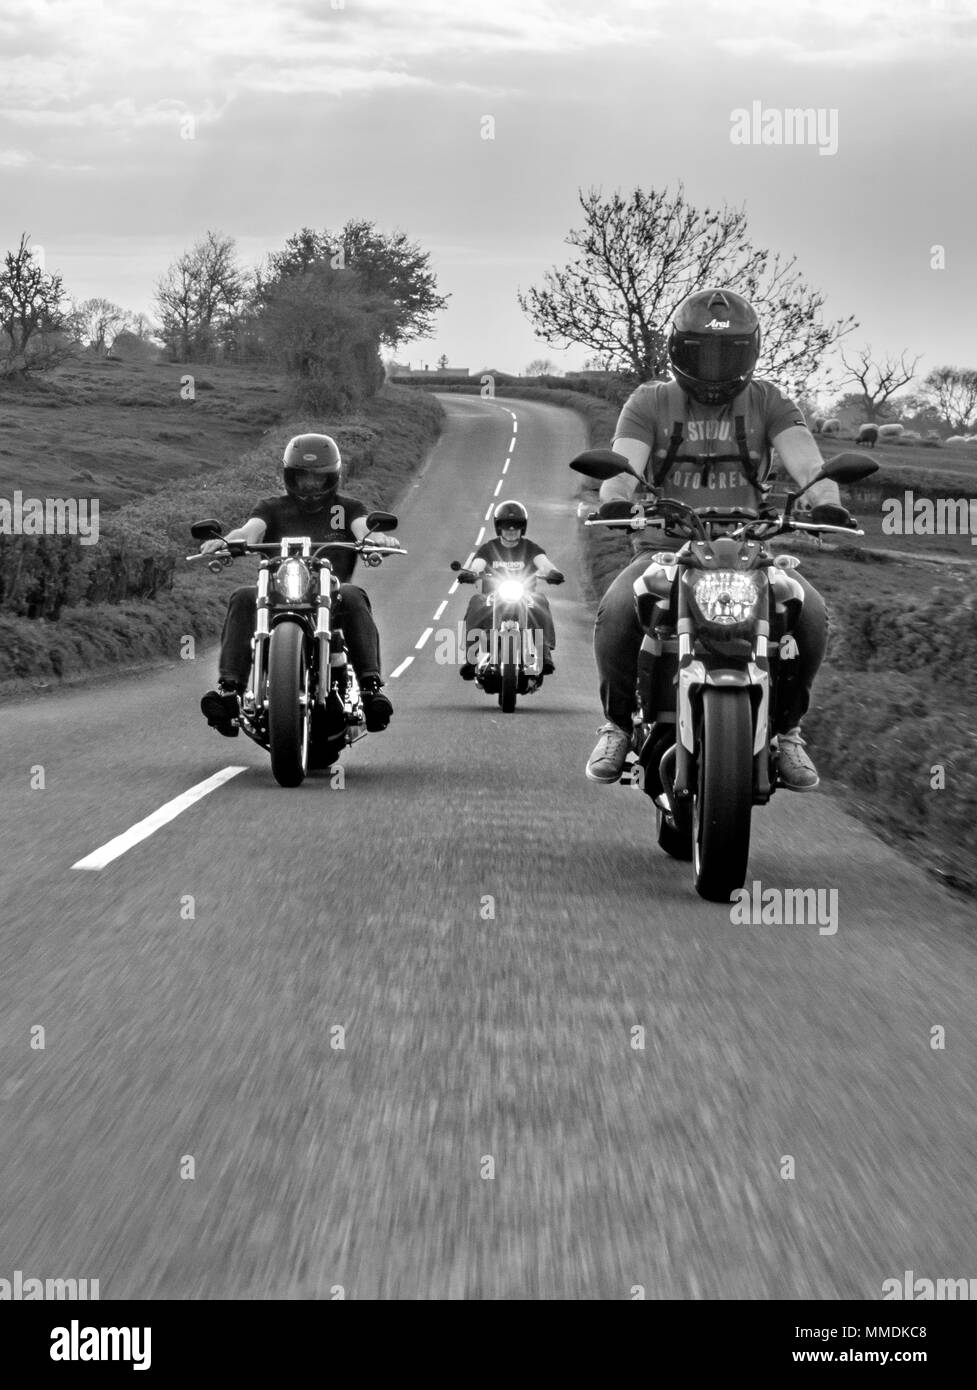 Les motards à cheval sur la route. Club de moto pour une balade en Angleterre Banque D'Images